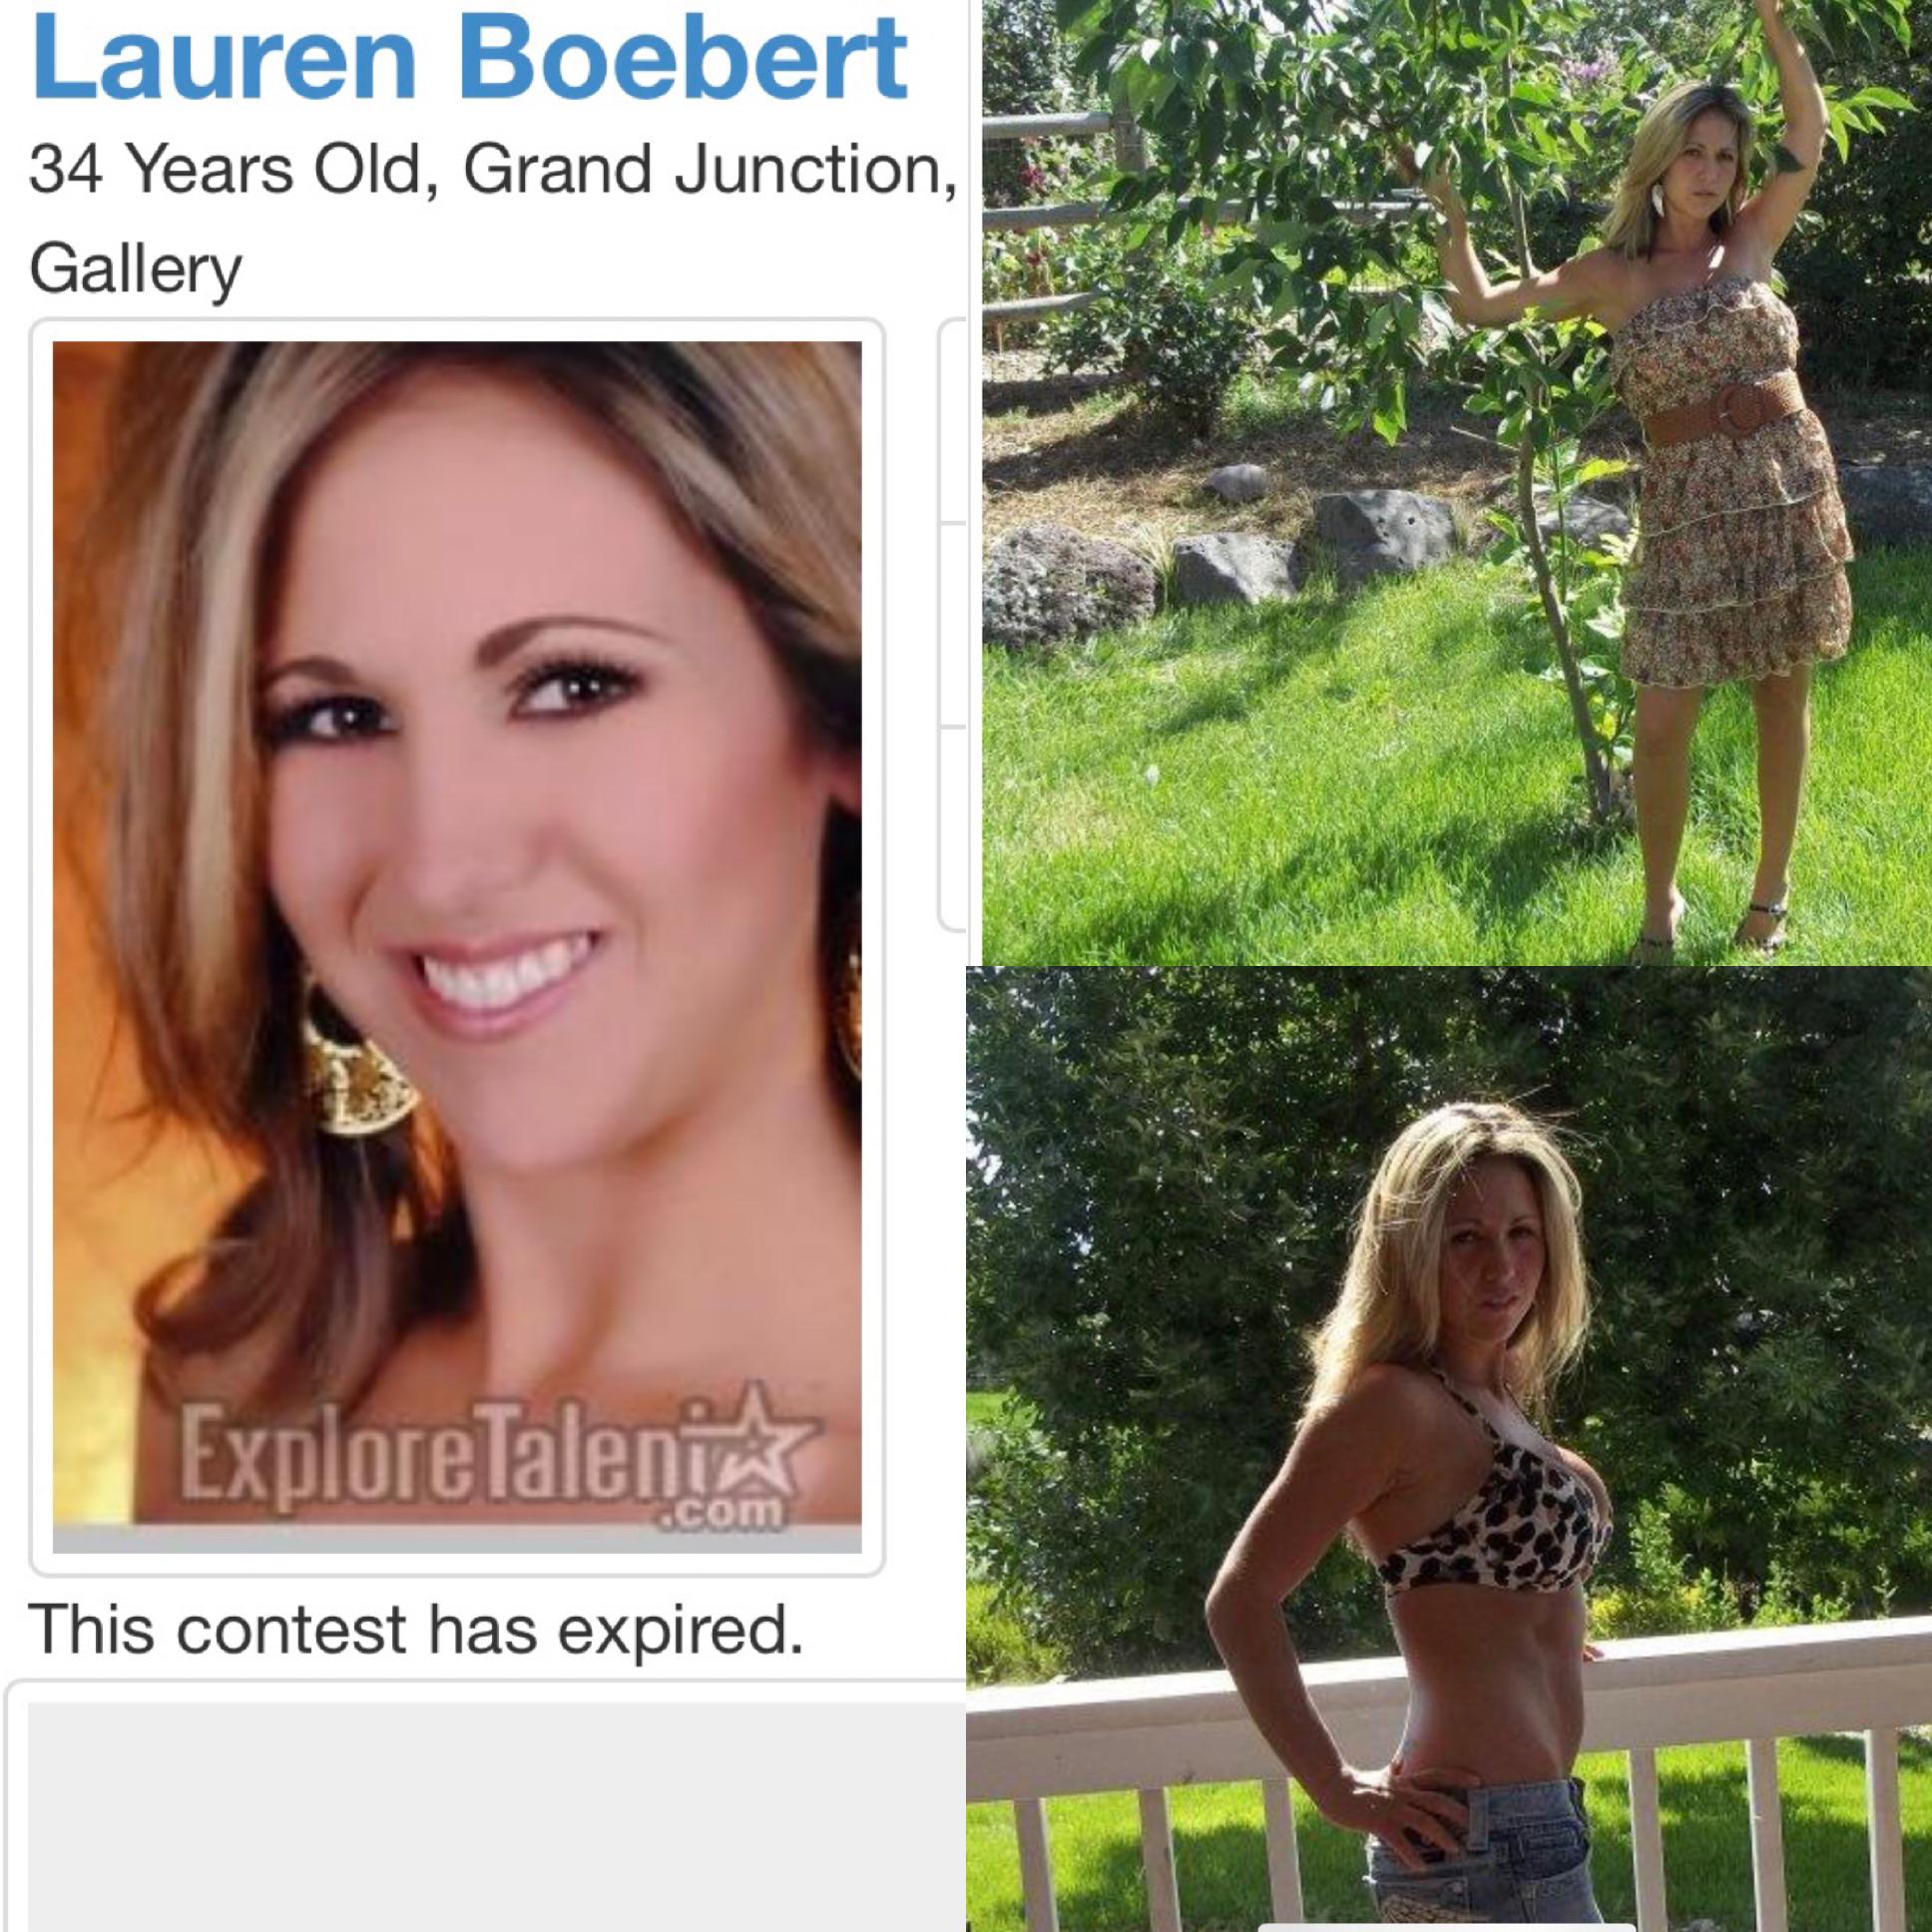 Lauren boebert whore